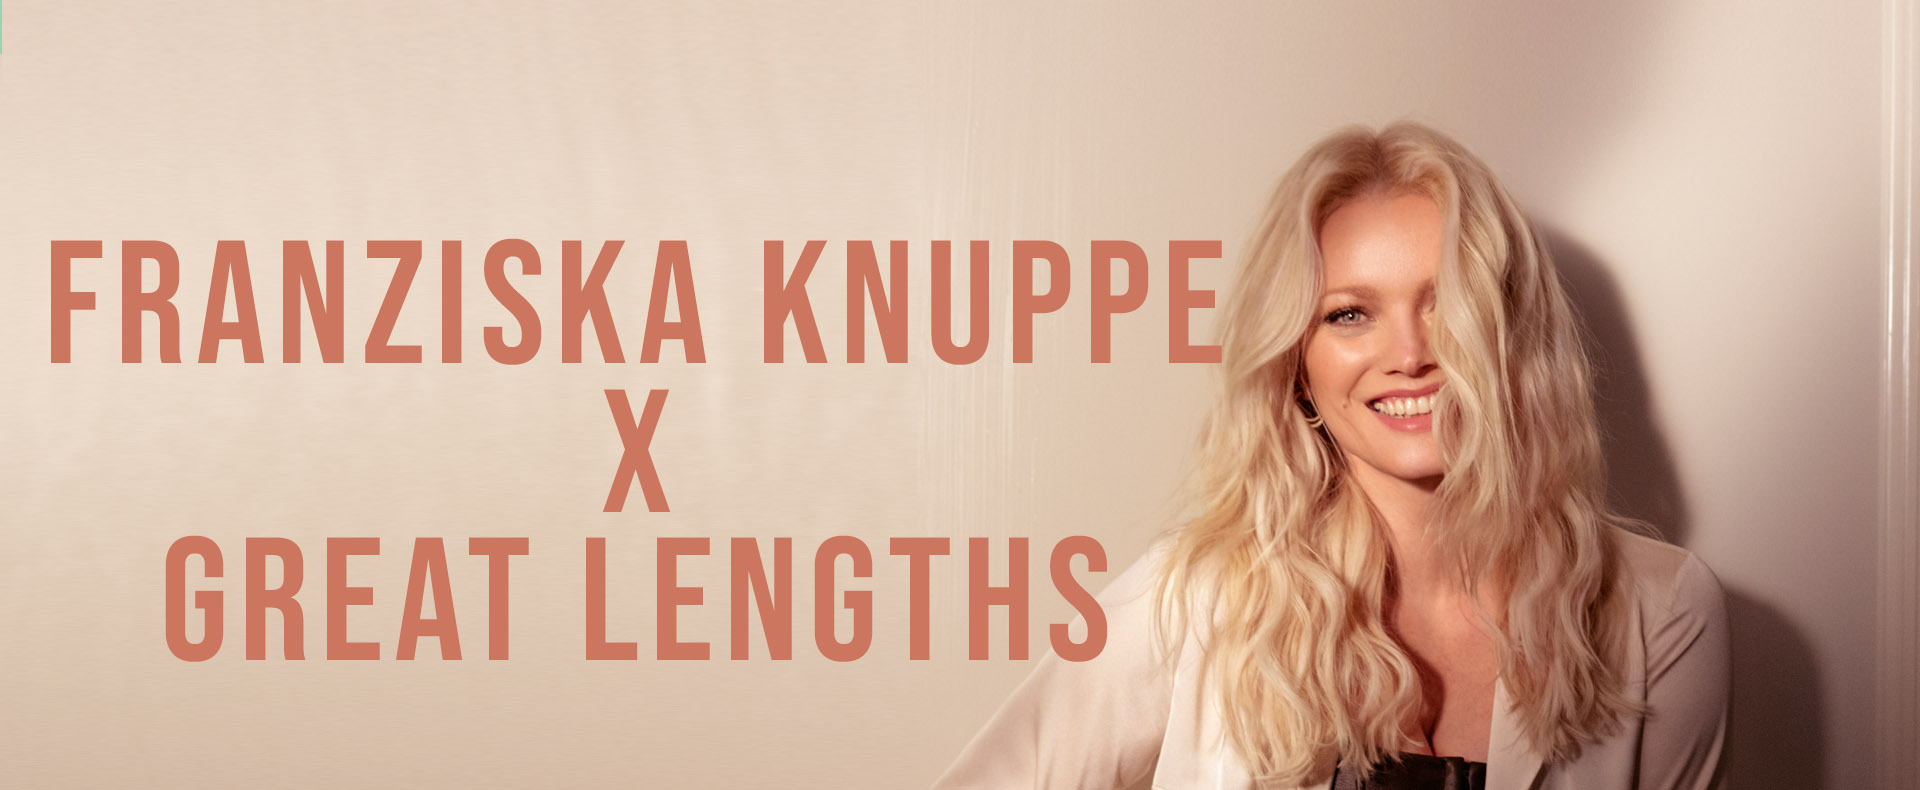 Franziska Knuppe x Great Lengths! (© Great Lengths)